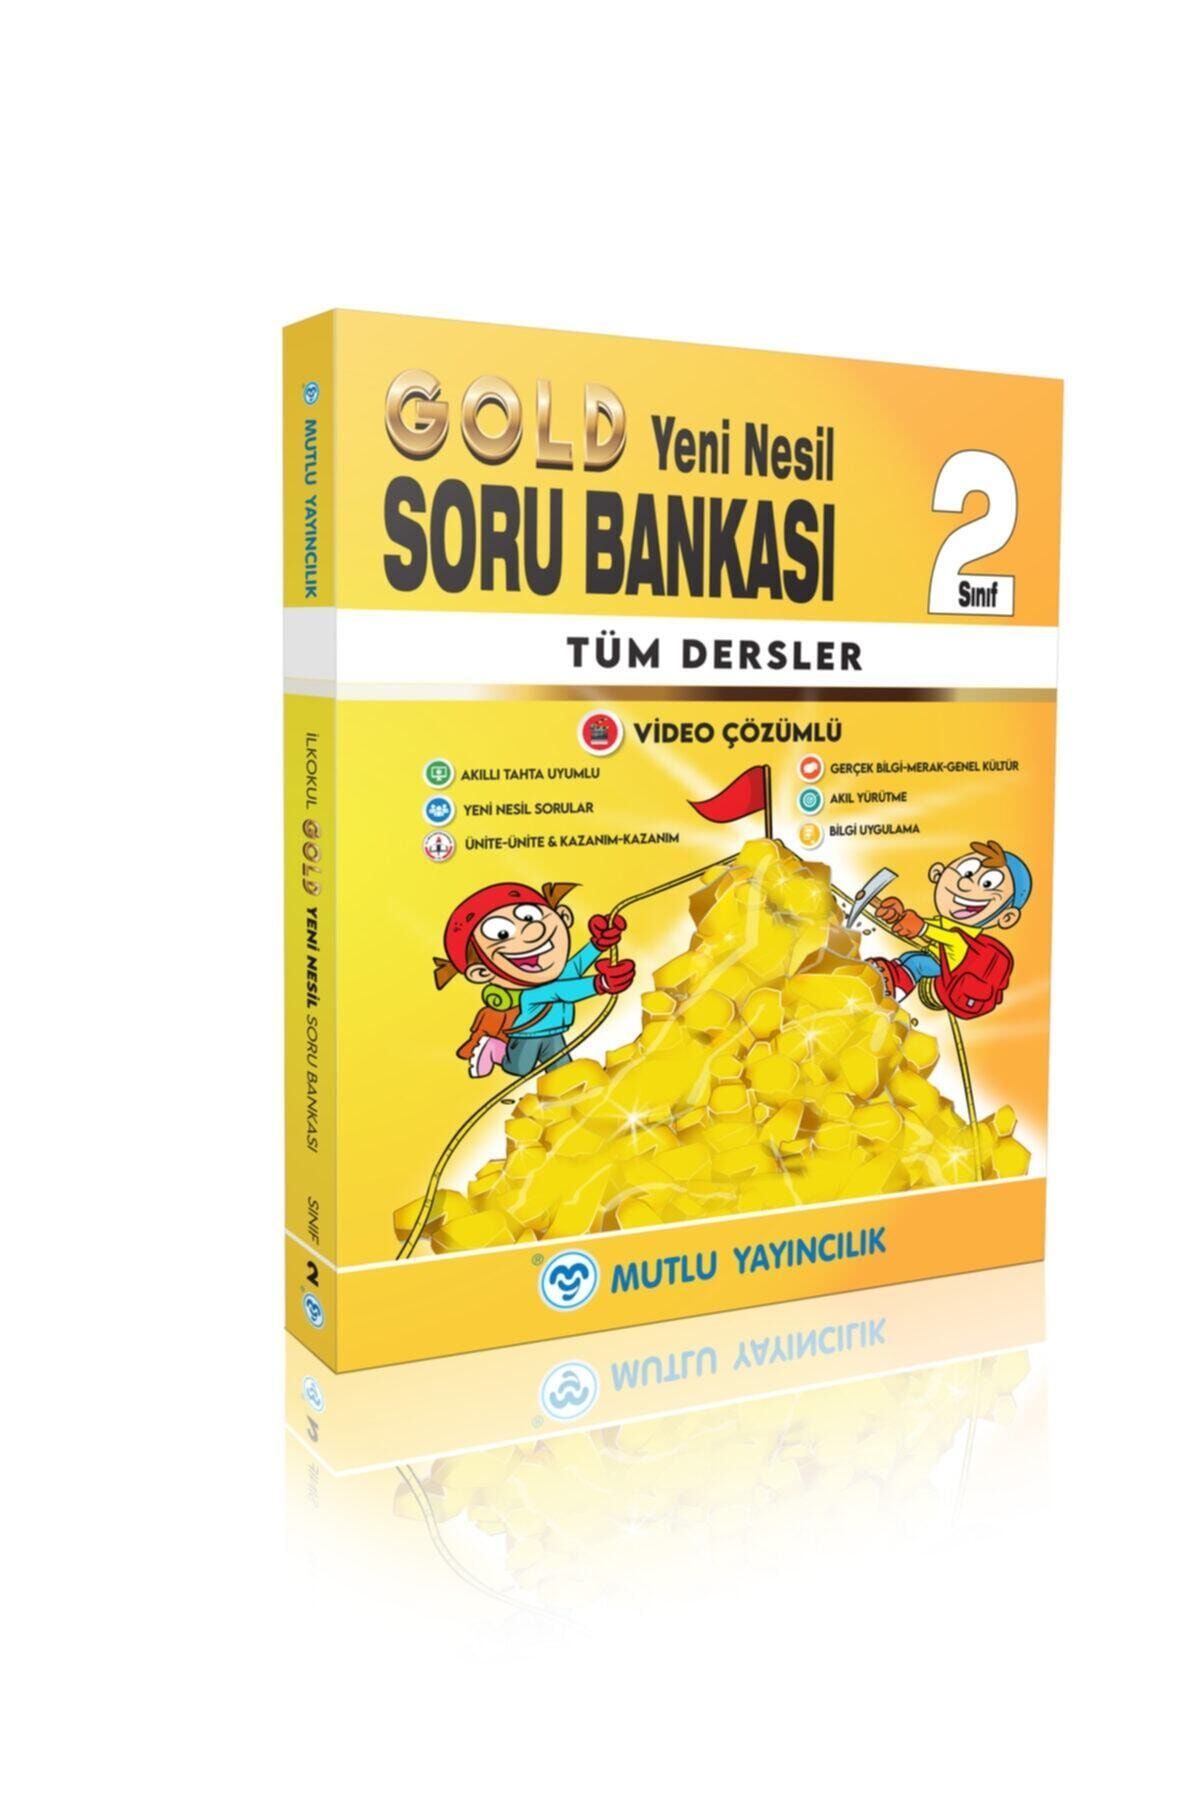 Mutlu Yayıncılık Mutlu Yayınları Gold Yeni Nesil Soru Bankası 2